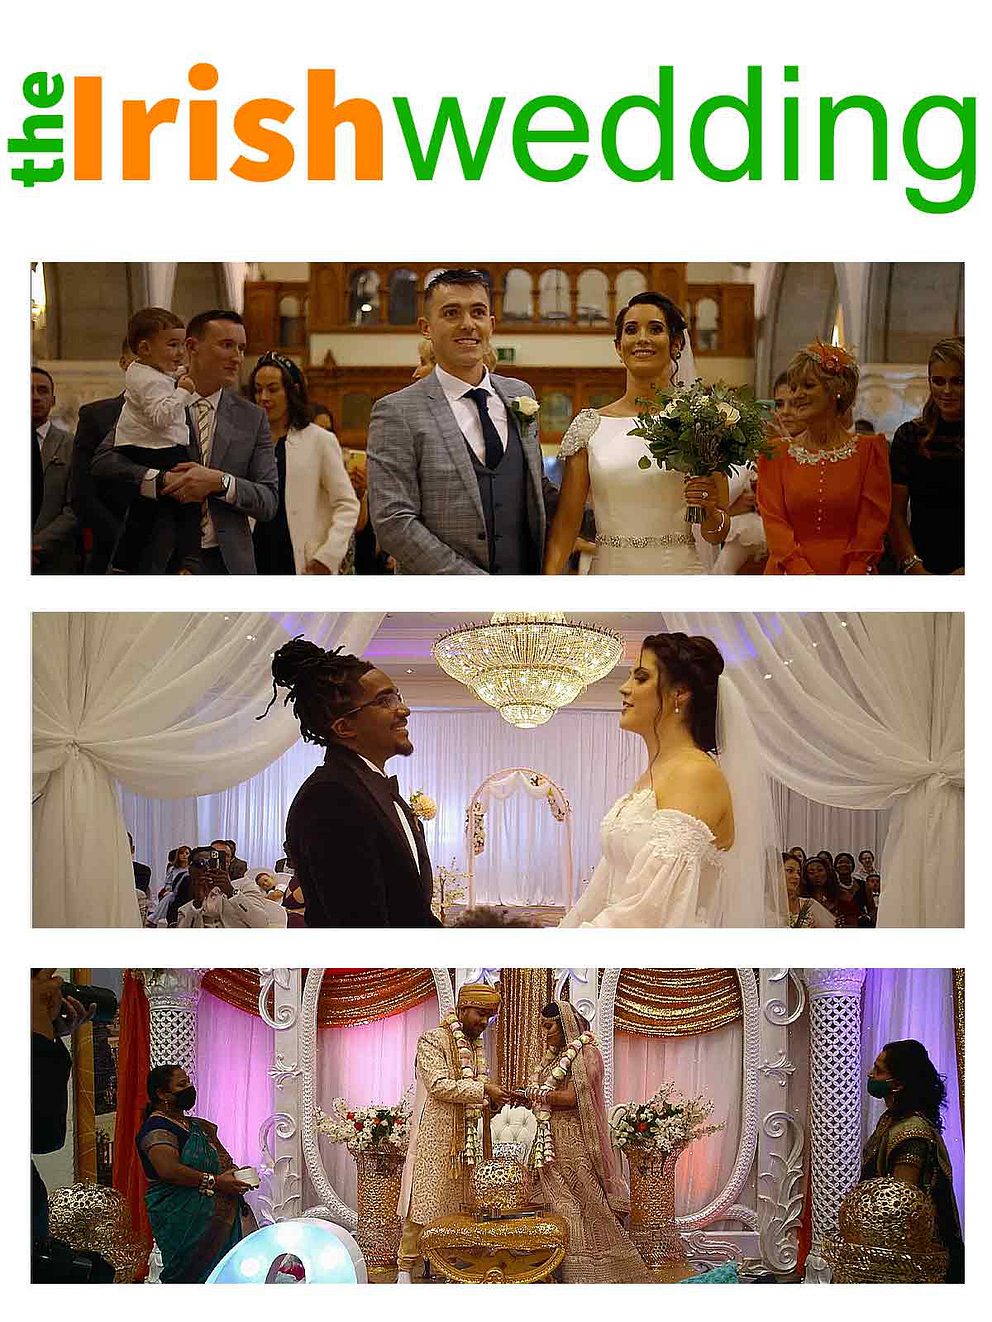 The Irish Wedding